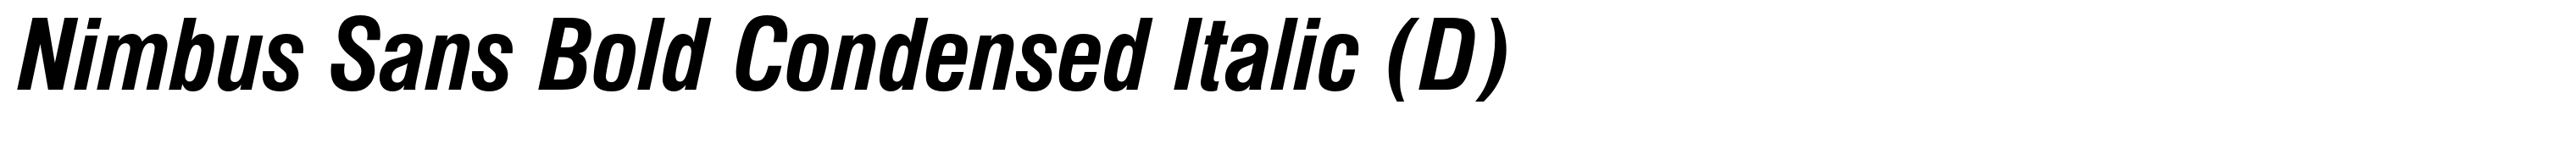 Nimbus Sans Bold Condensed Italic (D)